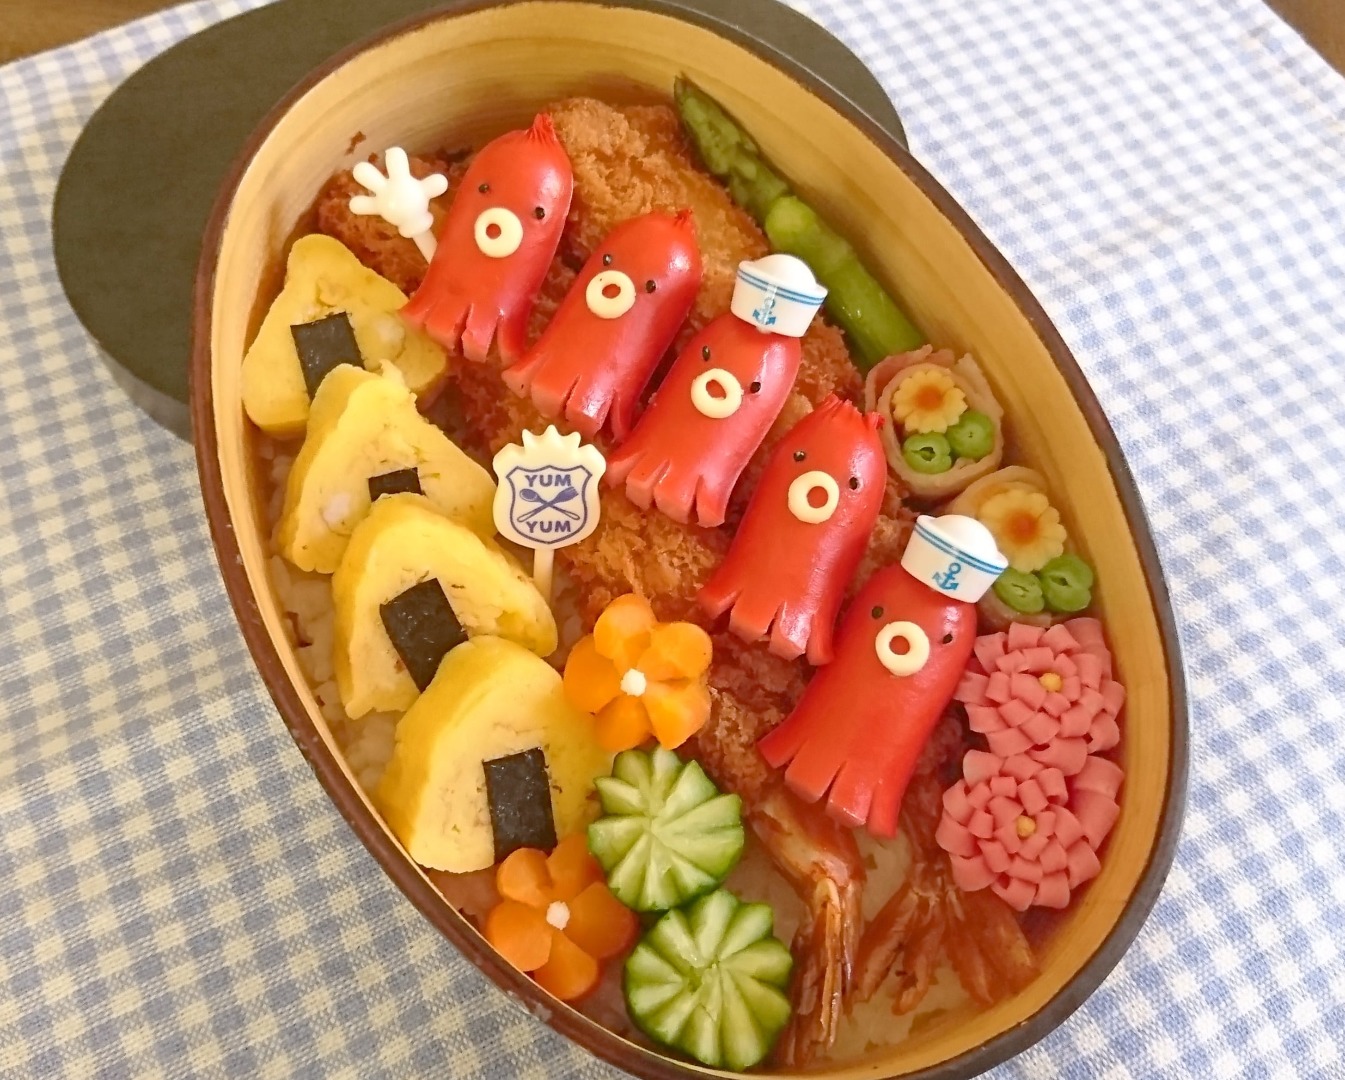 Yumimamaが投稿したフォト 昔ながらのお弁当おかずを現代風に詰めてみました 赤ウインナ 03 30 10 06 10 Limia リミア